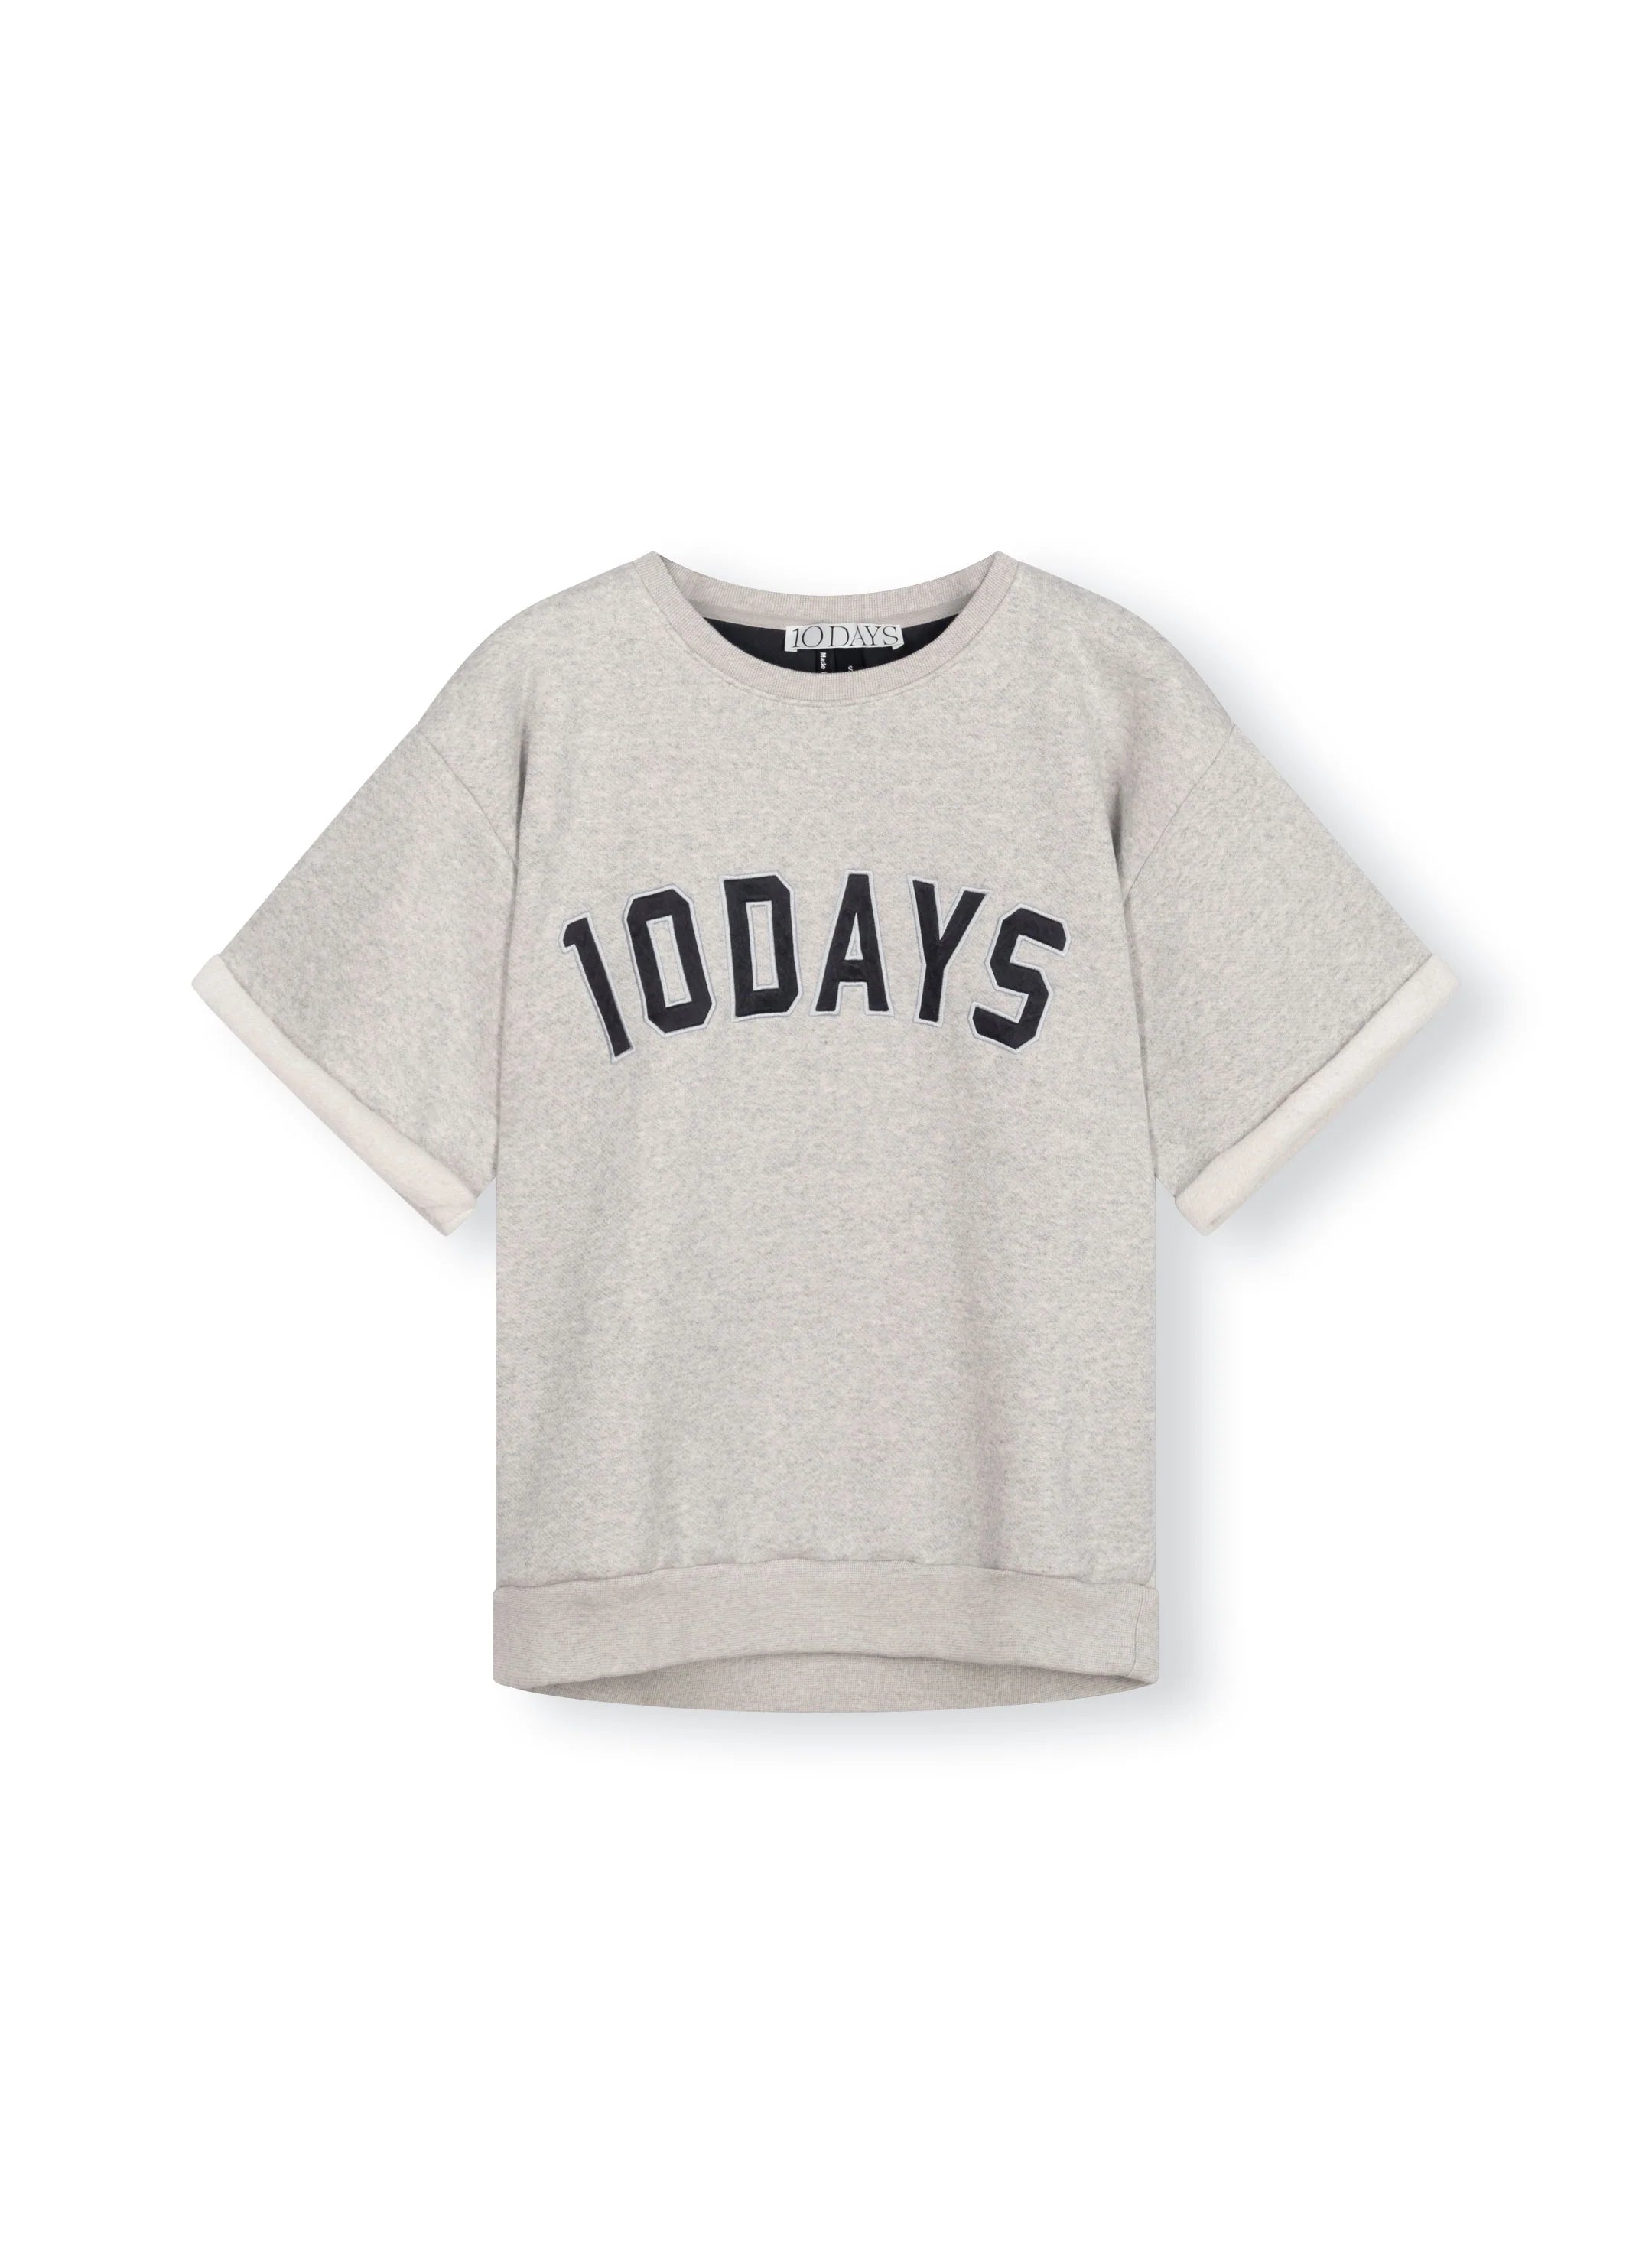 10 DAYS Shortsleeve Sweater